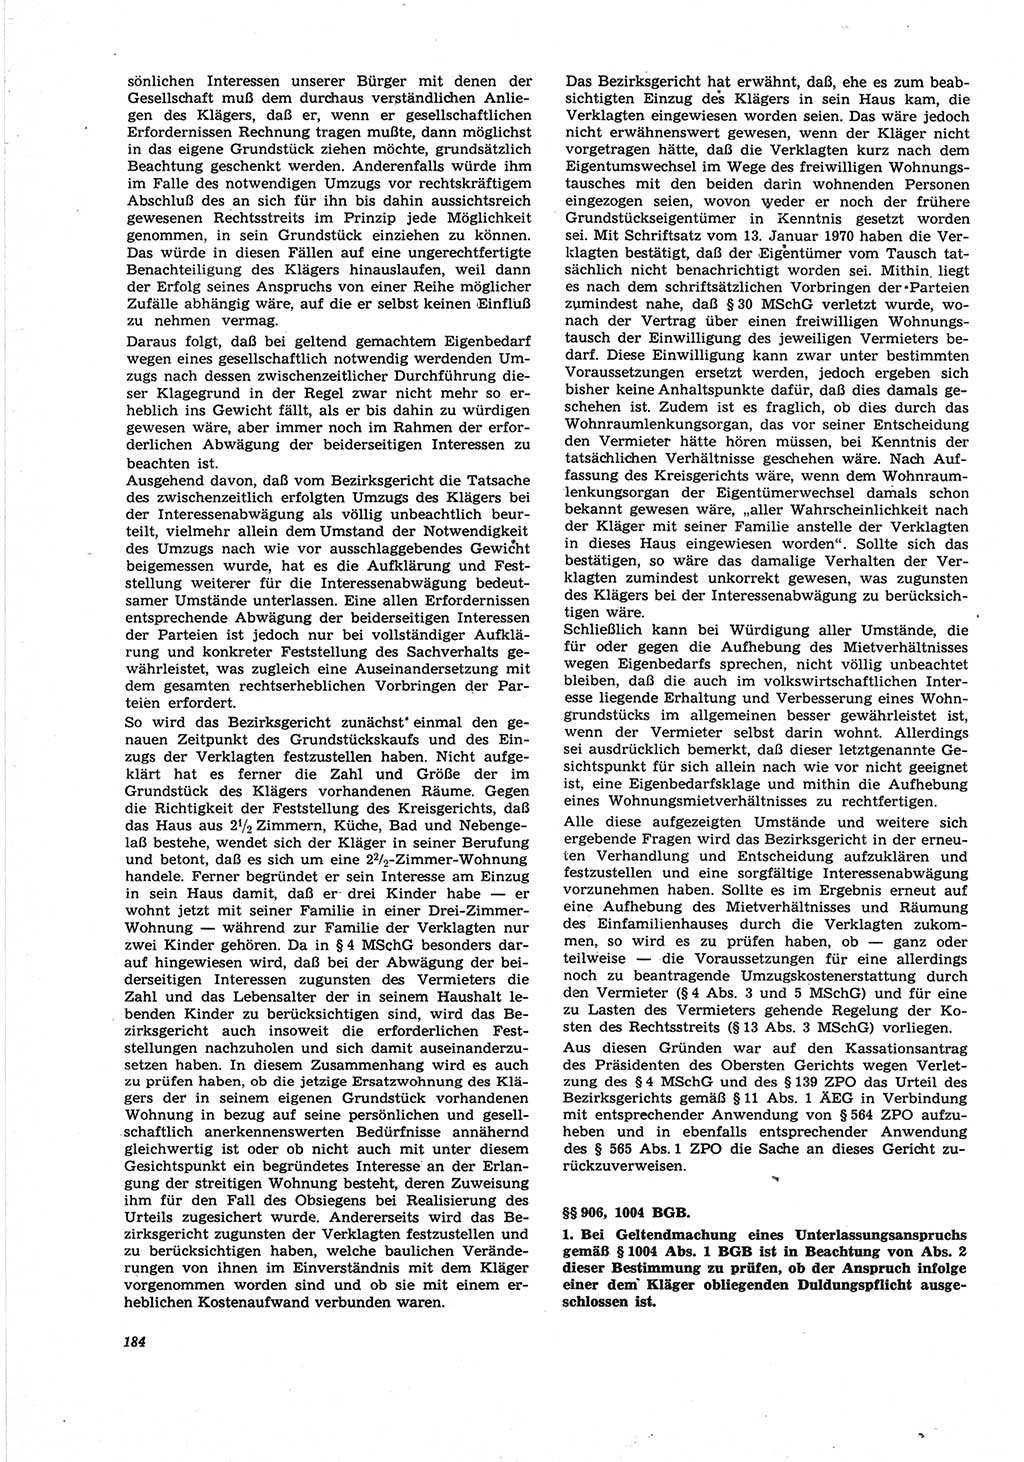 Neue Justiz (NJ), Zeitschrift für Recht und Rechtswissenschaft [Deutsche Demokratische Republik (DDR)], 25. Jahrgang 1971, Seite 184 (NJ DDR 1971, S. 184)